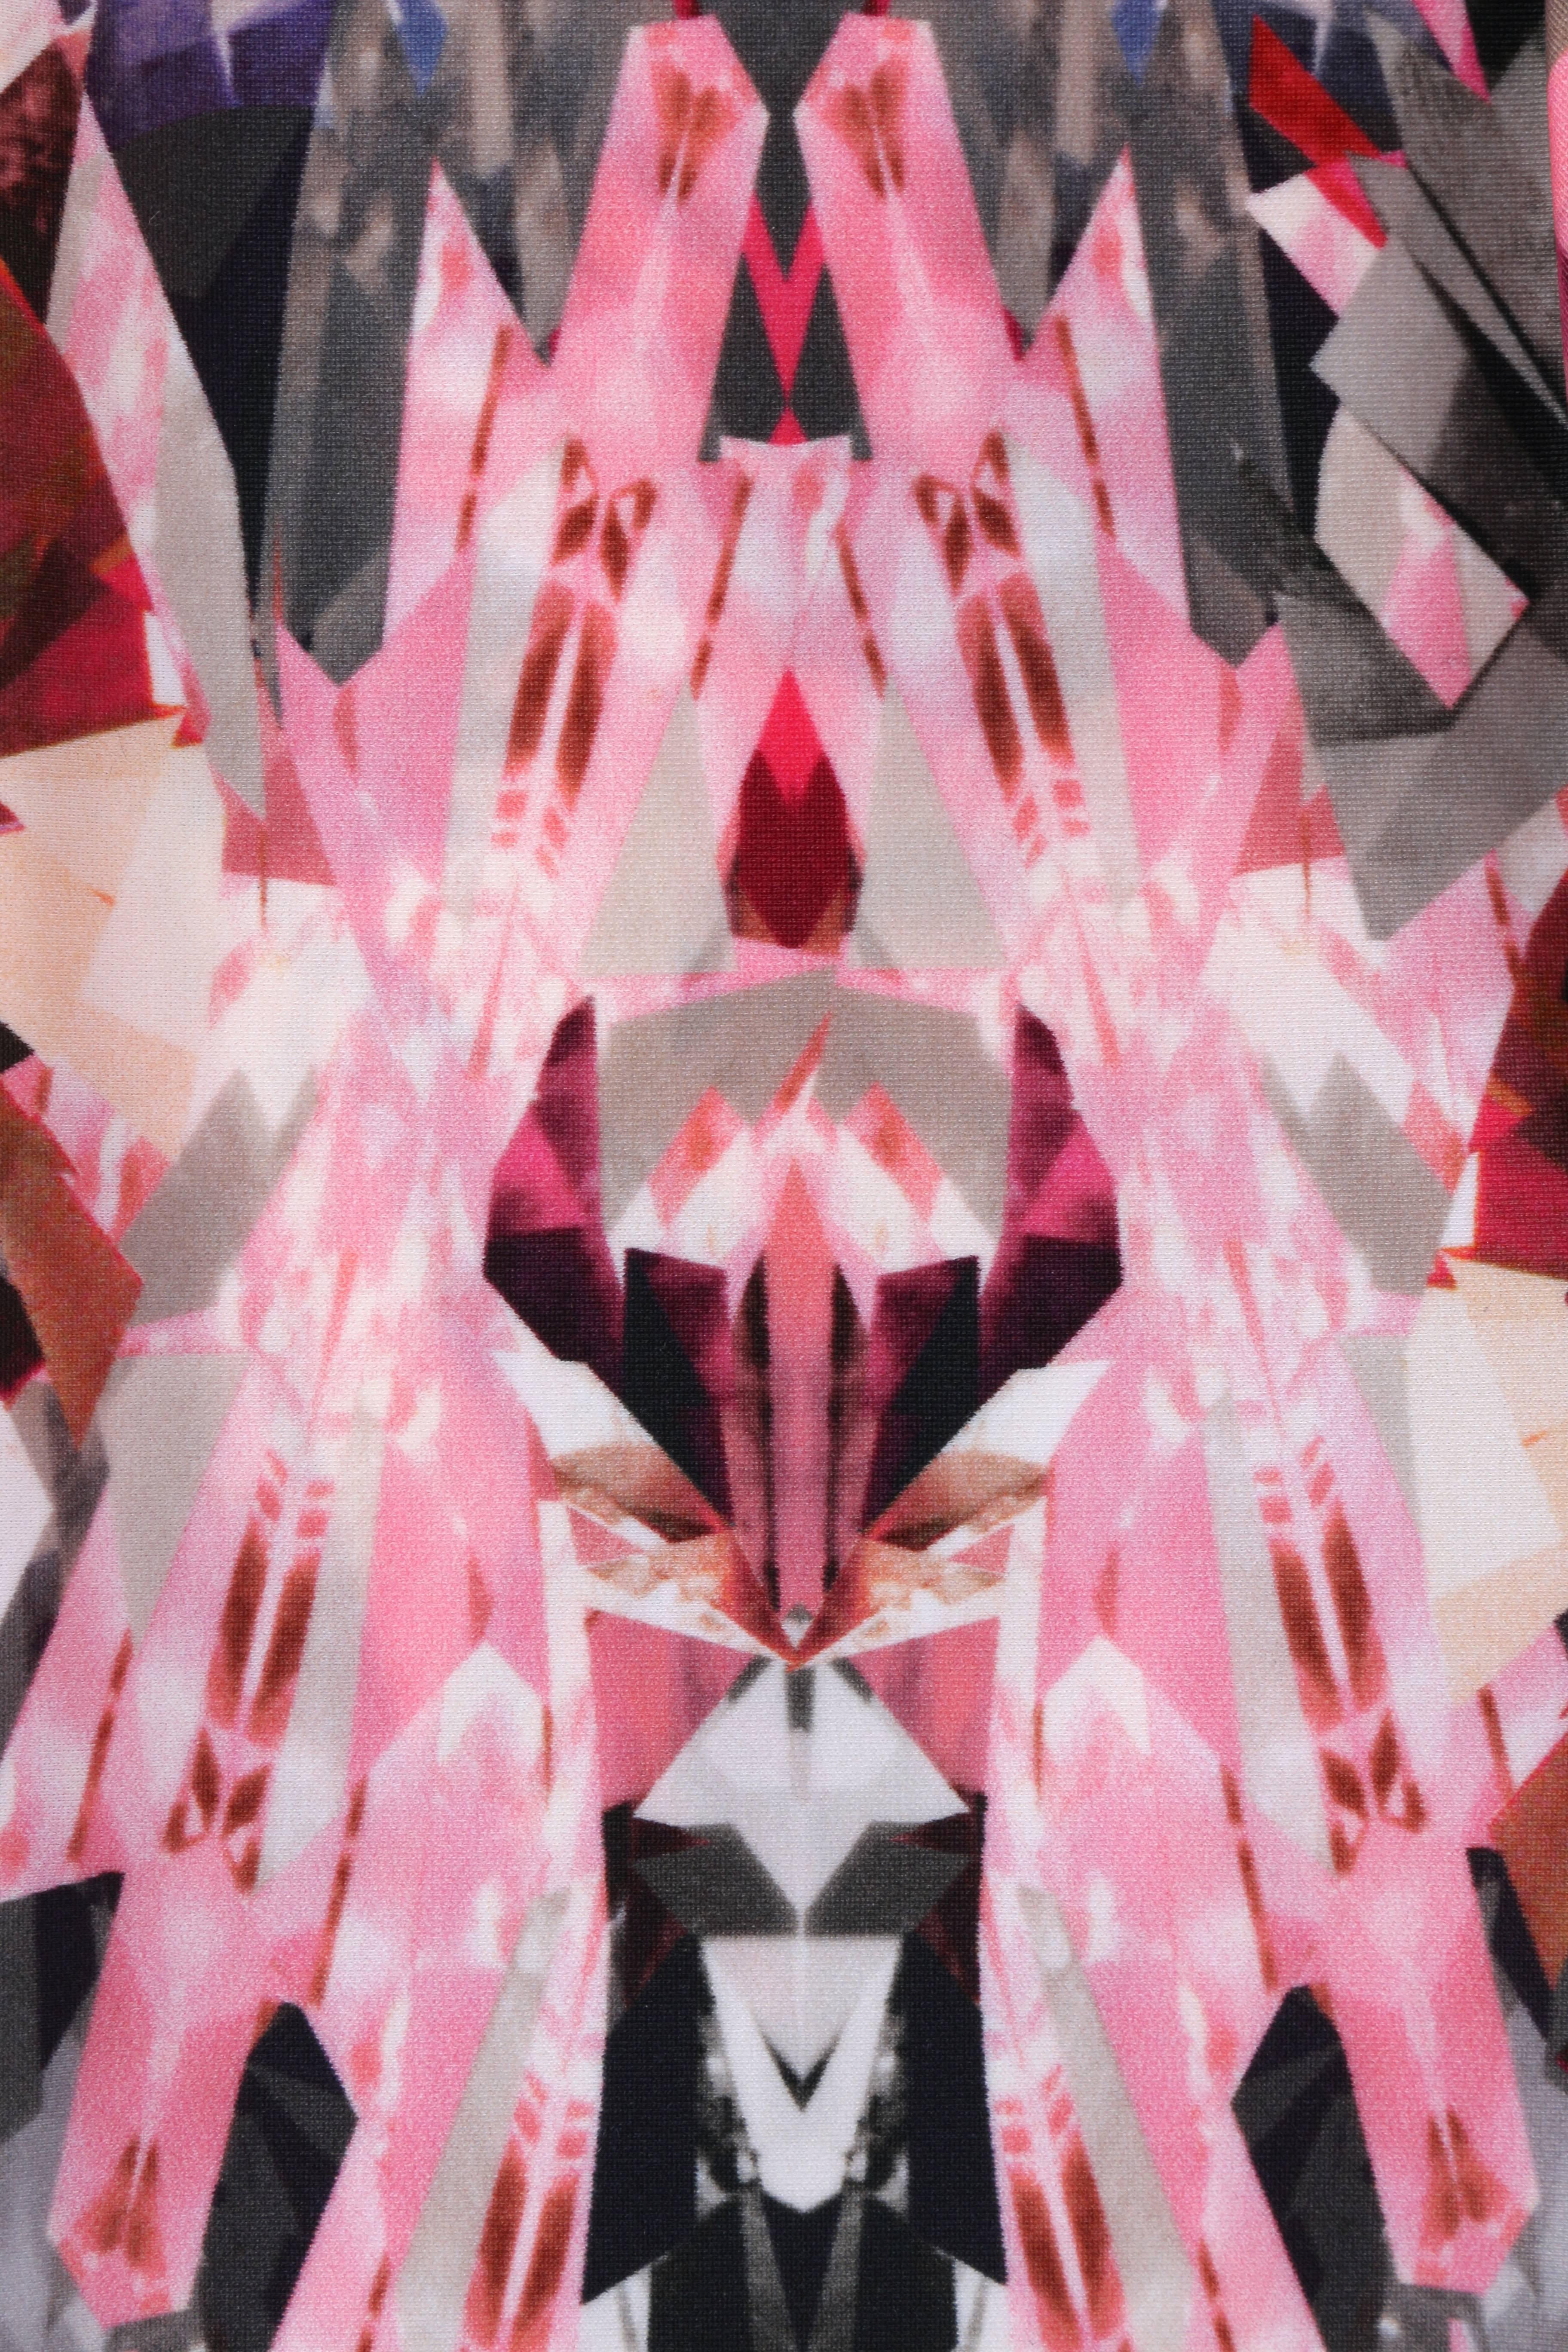 ALEXANDER MCQUEEN S/S 2009 Pink Crystal Kaleidoscope Print Leggings Pants Sz XS 3